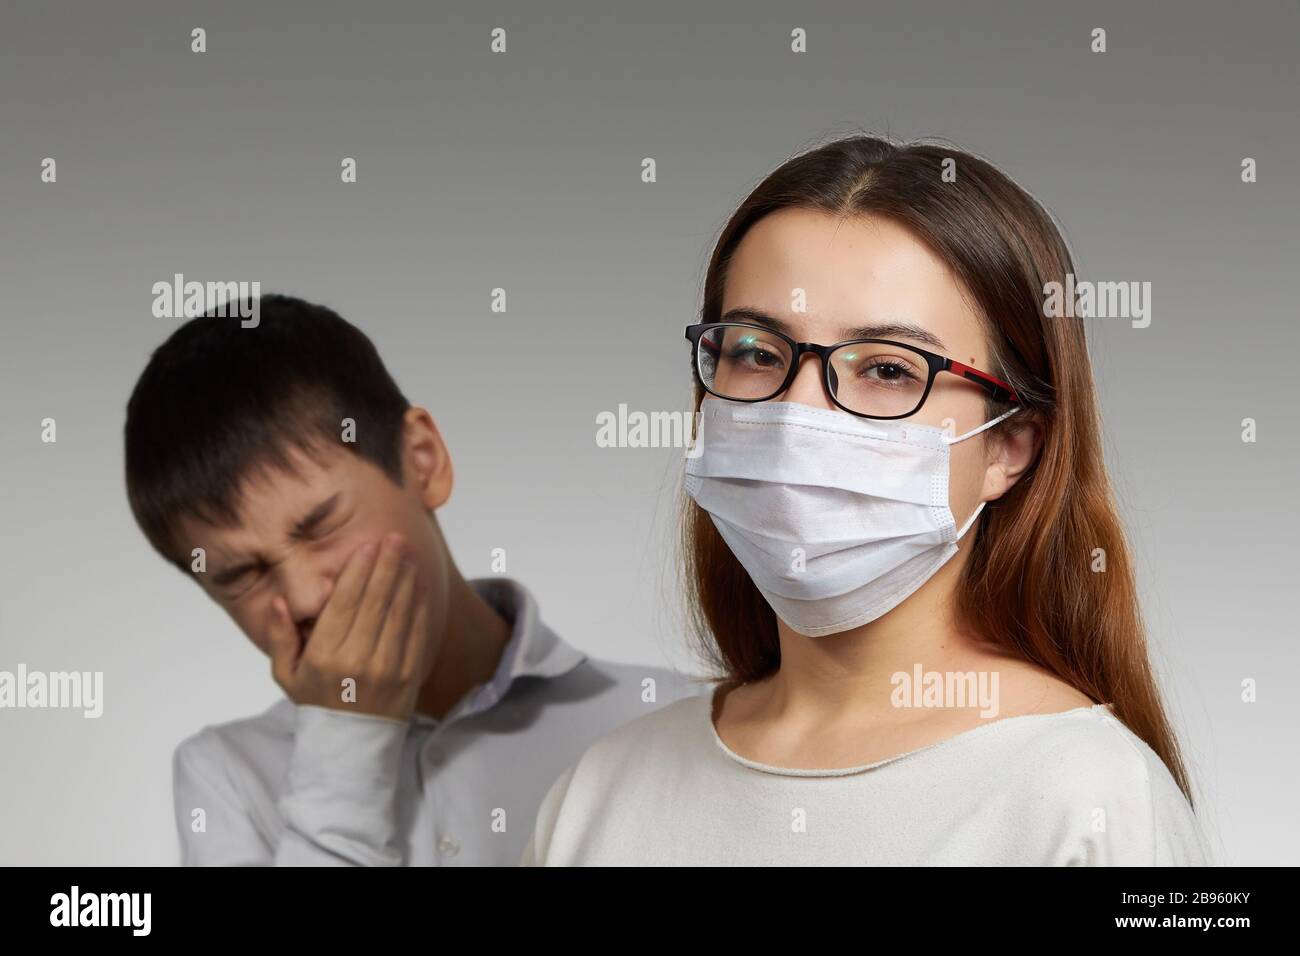 estornudos enmascarados de niña y niño, el concepto de protección contra la propagación de la máscara médica del virus. Foto de stock